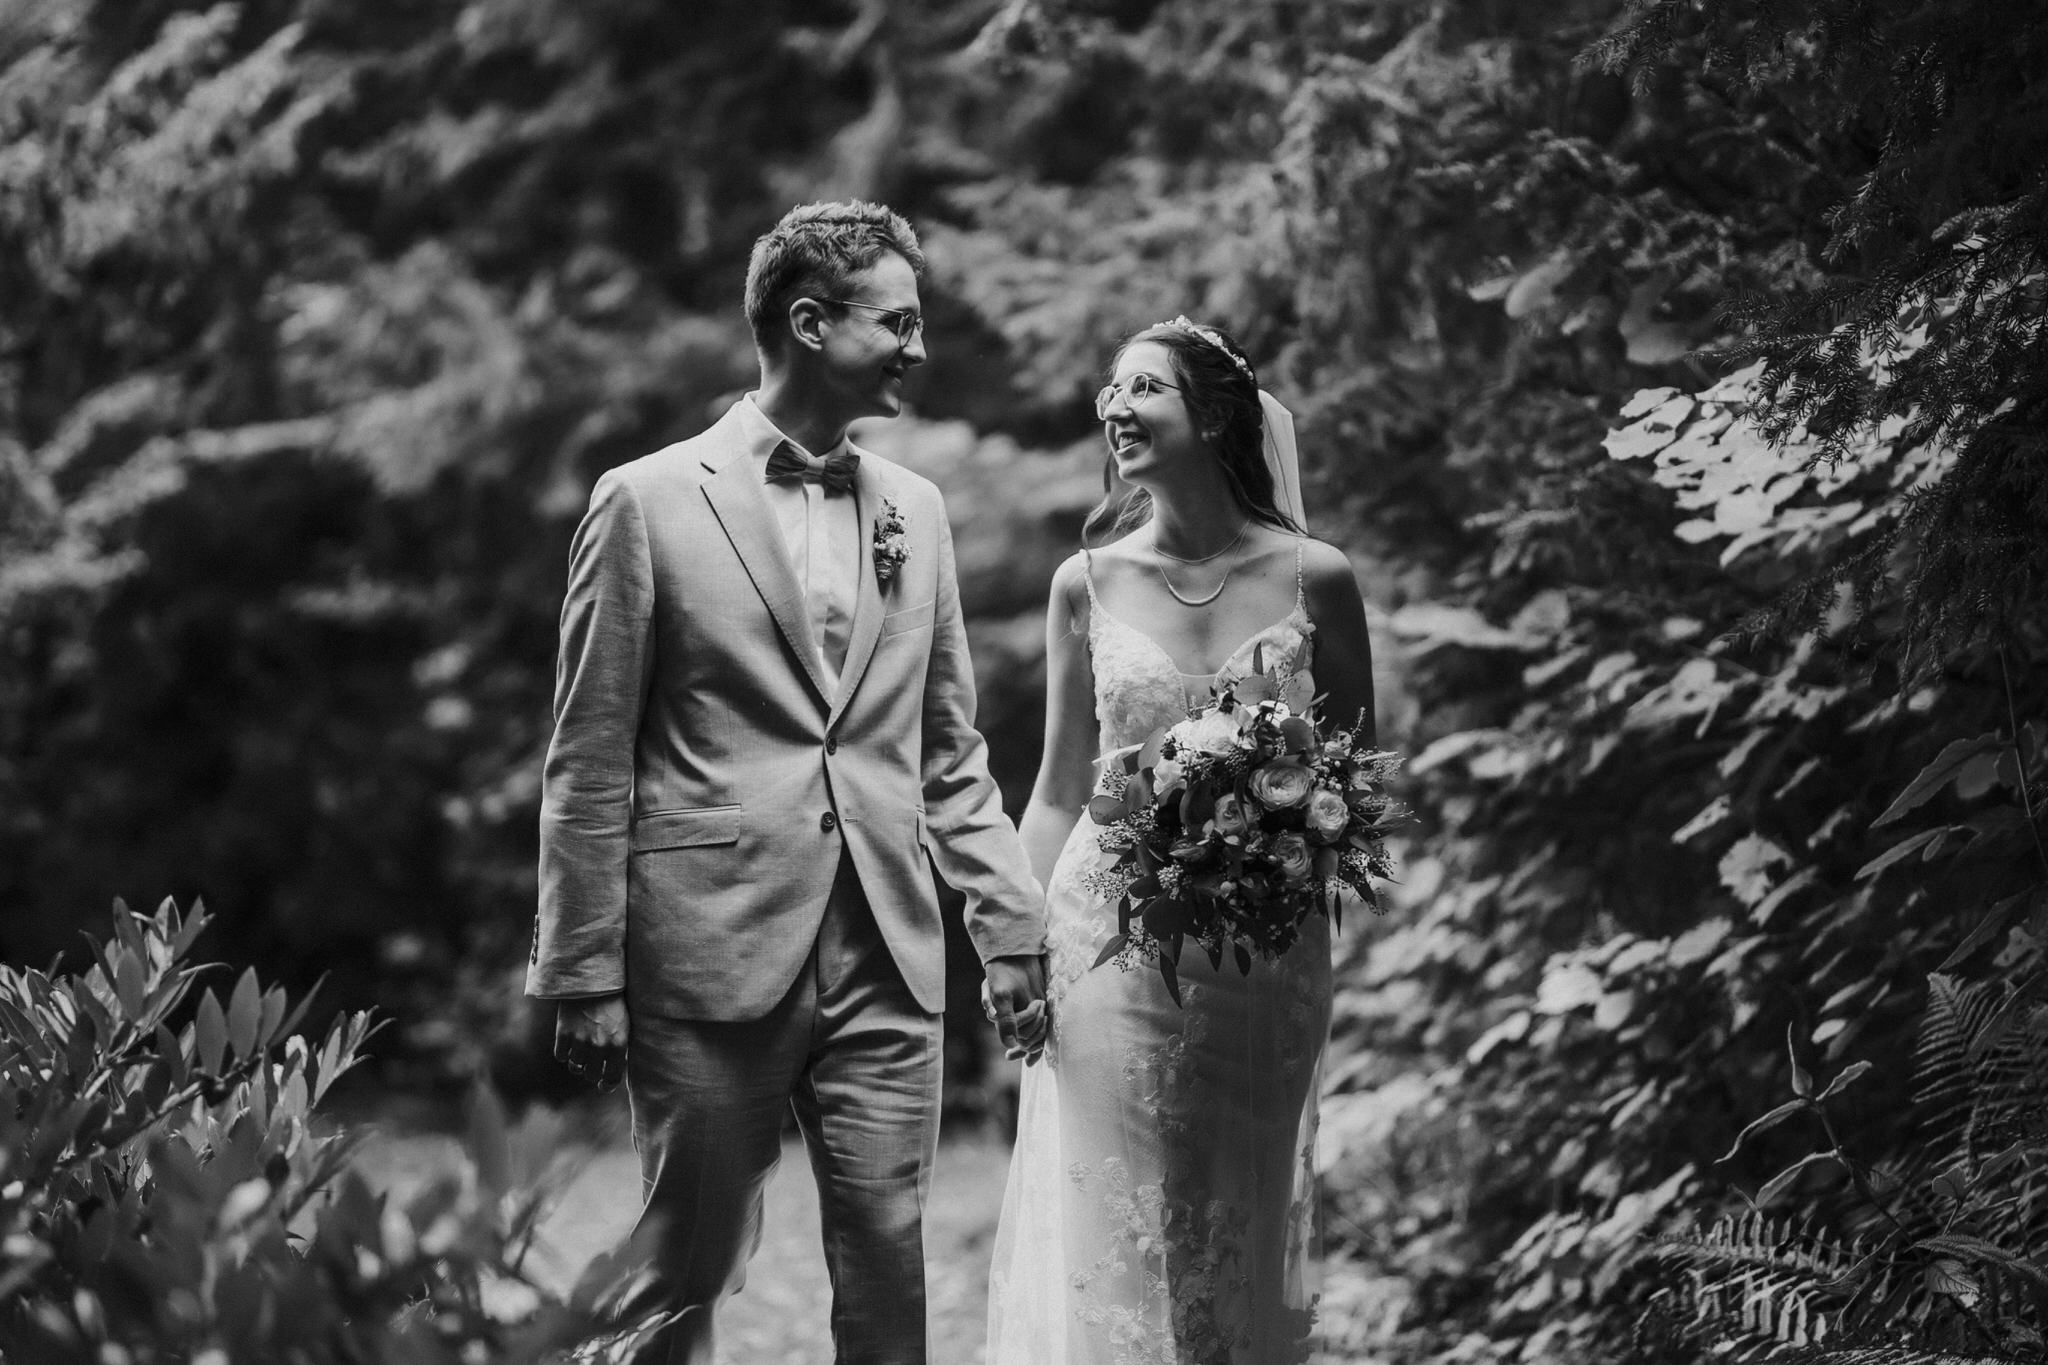 Verträumte Brautpaarfotos im Garten des Hotel Freigeist – Das frisch vermählte Paar genießt intime Momente der Zweisamkeit inmitten der grünen Oase, ein wundervolles Spiel aus Liebe und Natur.